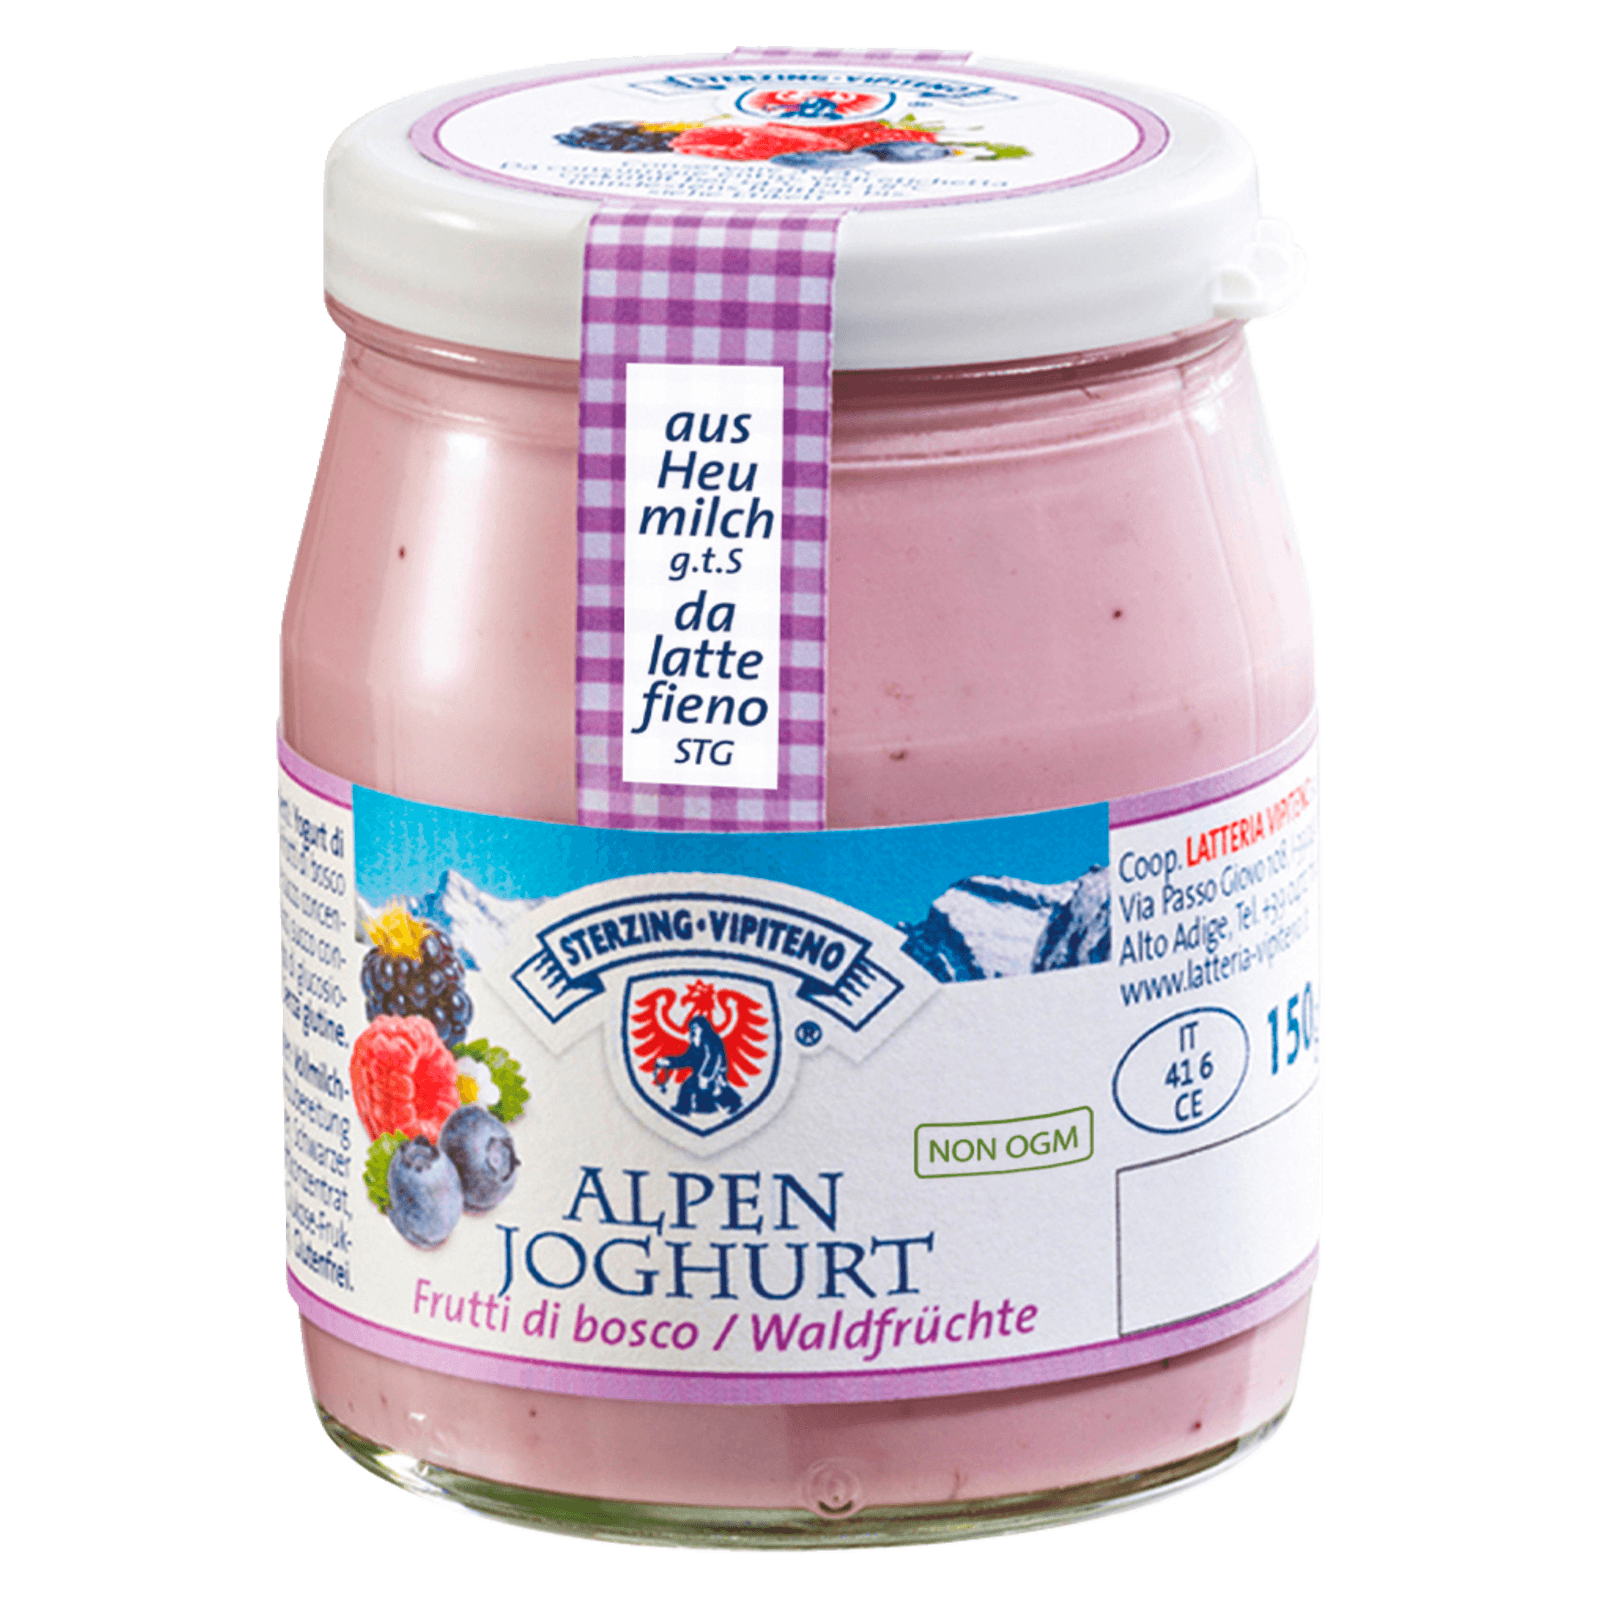 Sterzing Vipiteno Alpenjoghurt Waldfrucht 150g  für 0.99 EUR